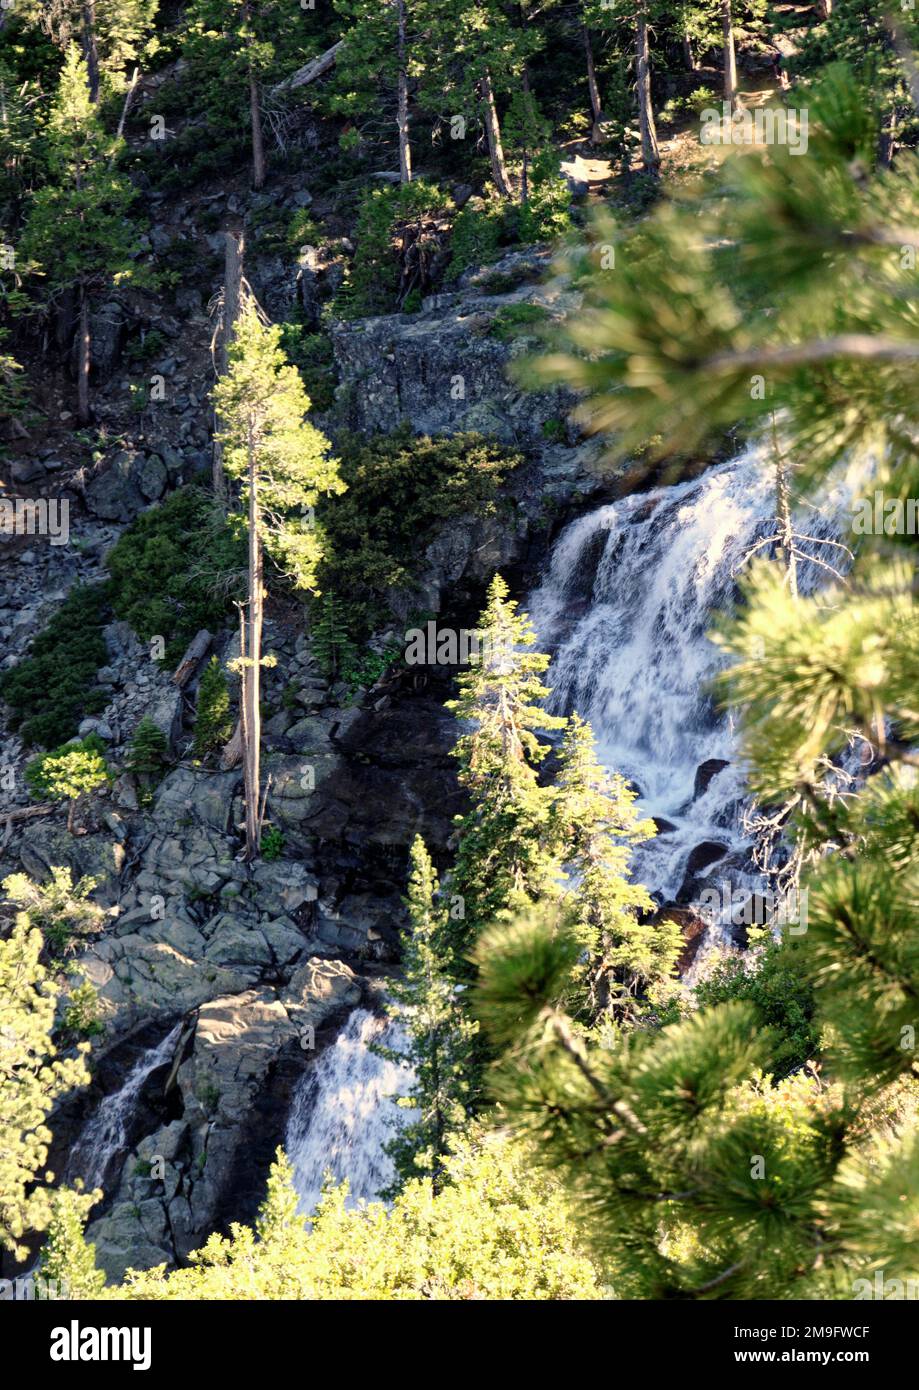 Cascate d'acqua lungo Eagle Falls sopra l'Emerald Bay state Park, nell'area sud-occidentale del lago Tahoe, sulle montagne della Sierra Nevada, California. Foto Stock